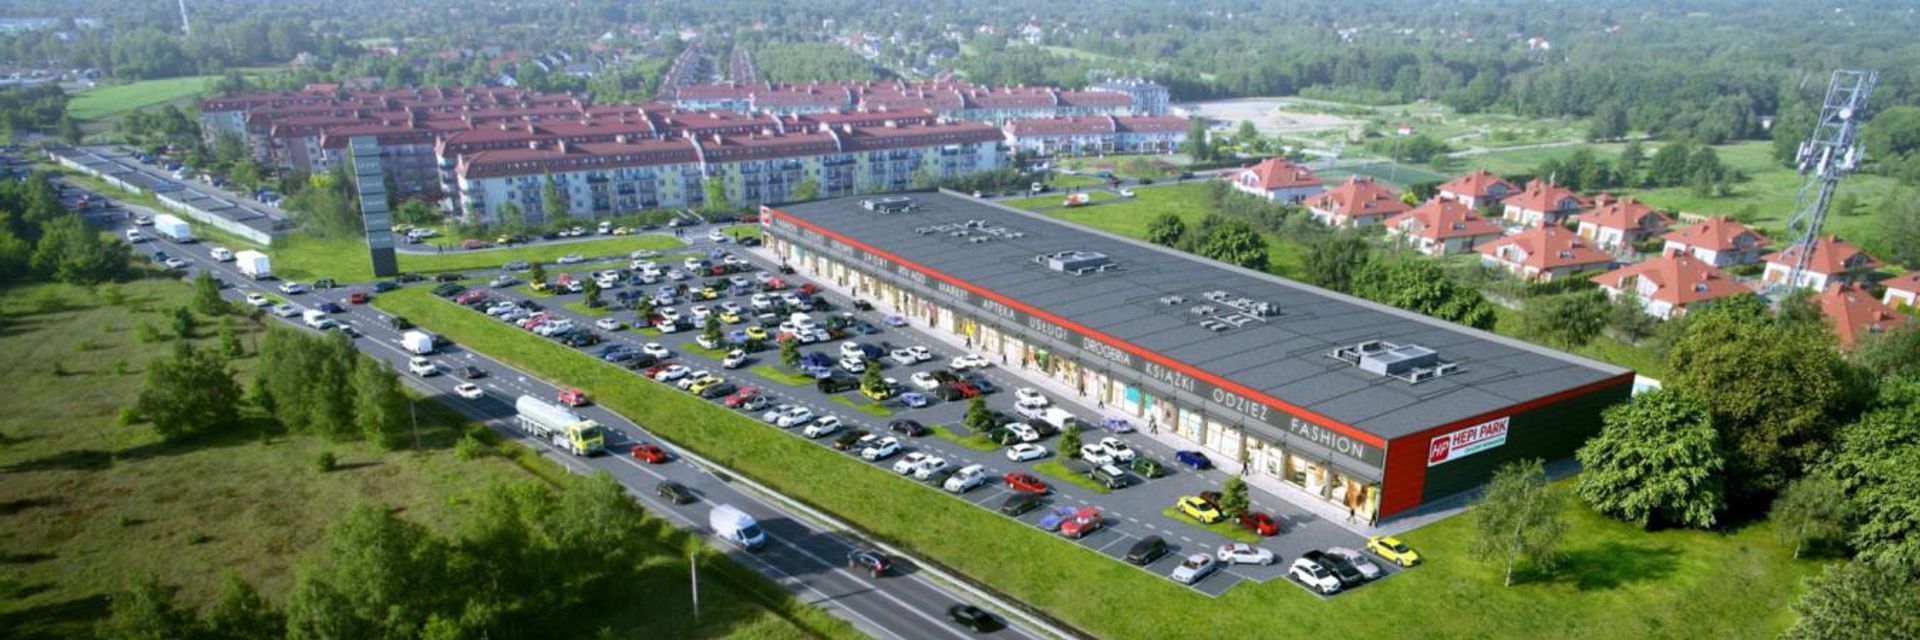 Wkrótce otwarcie kompleksu handlowego Hepi Park w Aleksandrowie Łódzkim